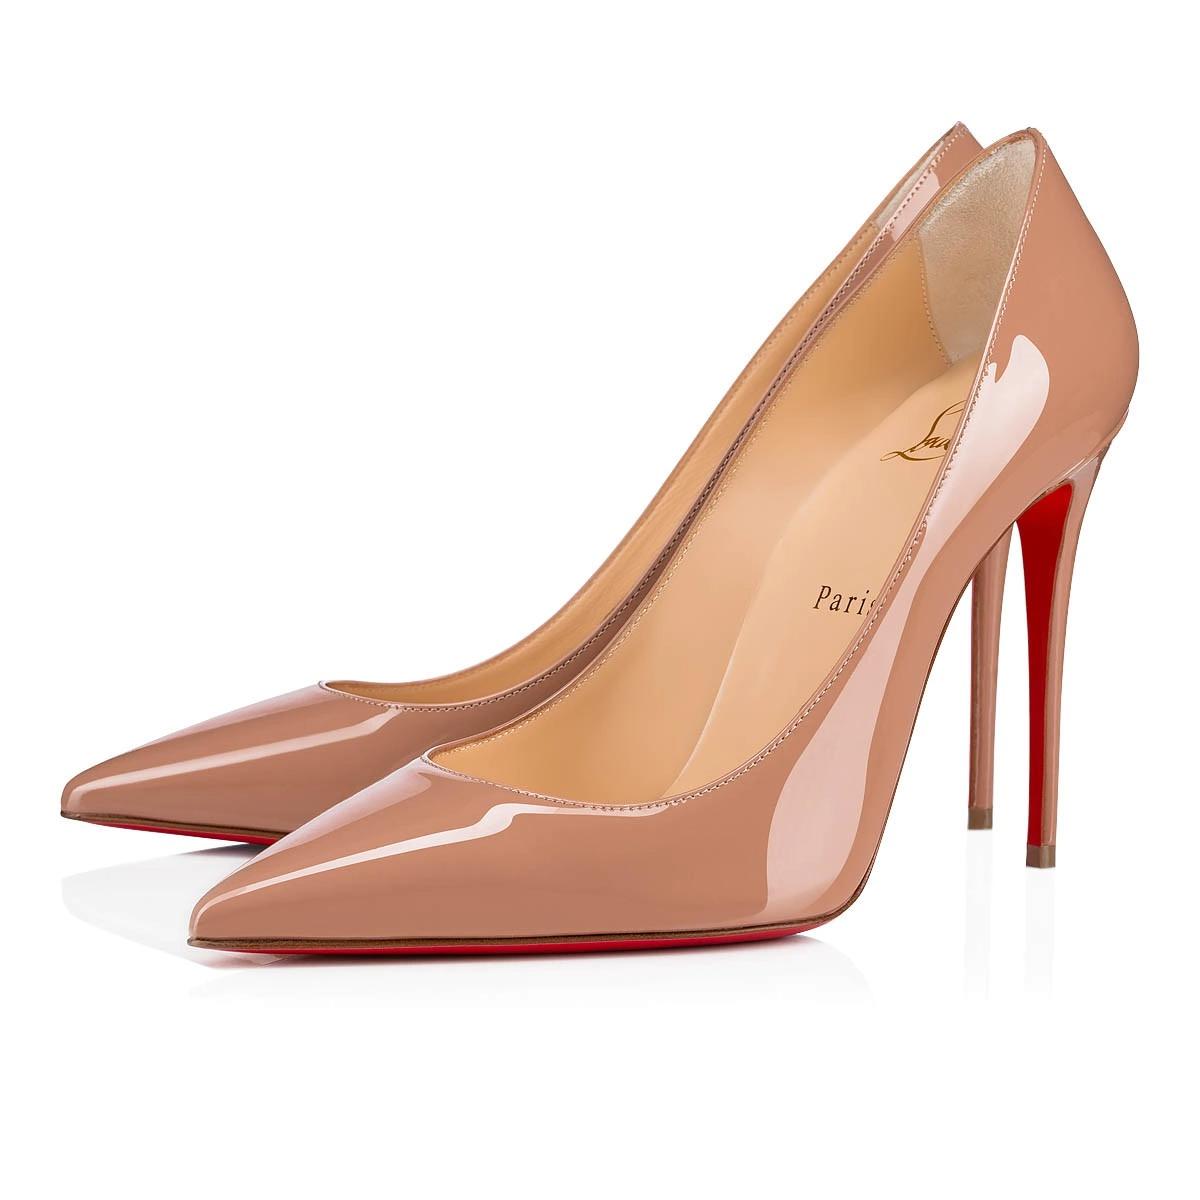 [Świętujemy 30 lat czerwonych piątków S! 】 Czerwone buty CL Kate ze skóry lakierowanej - 90% zniżki.